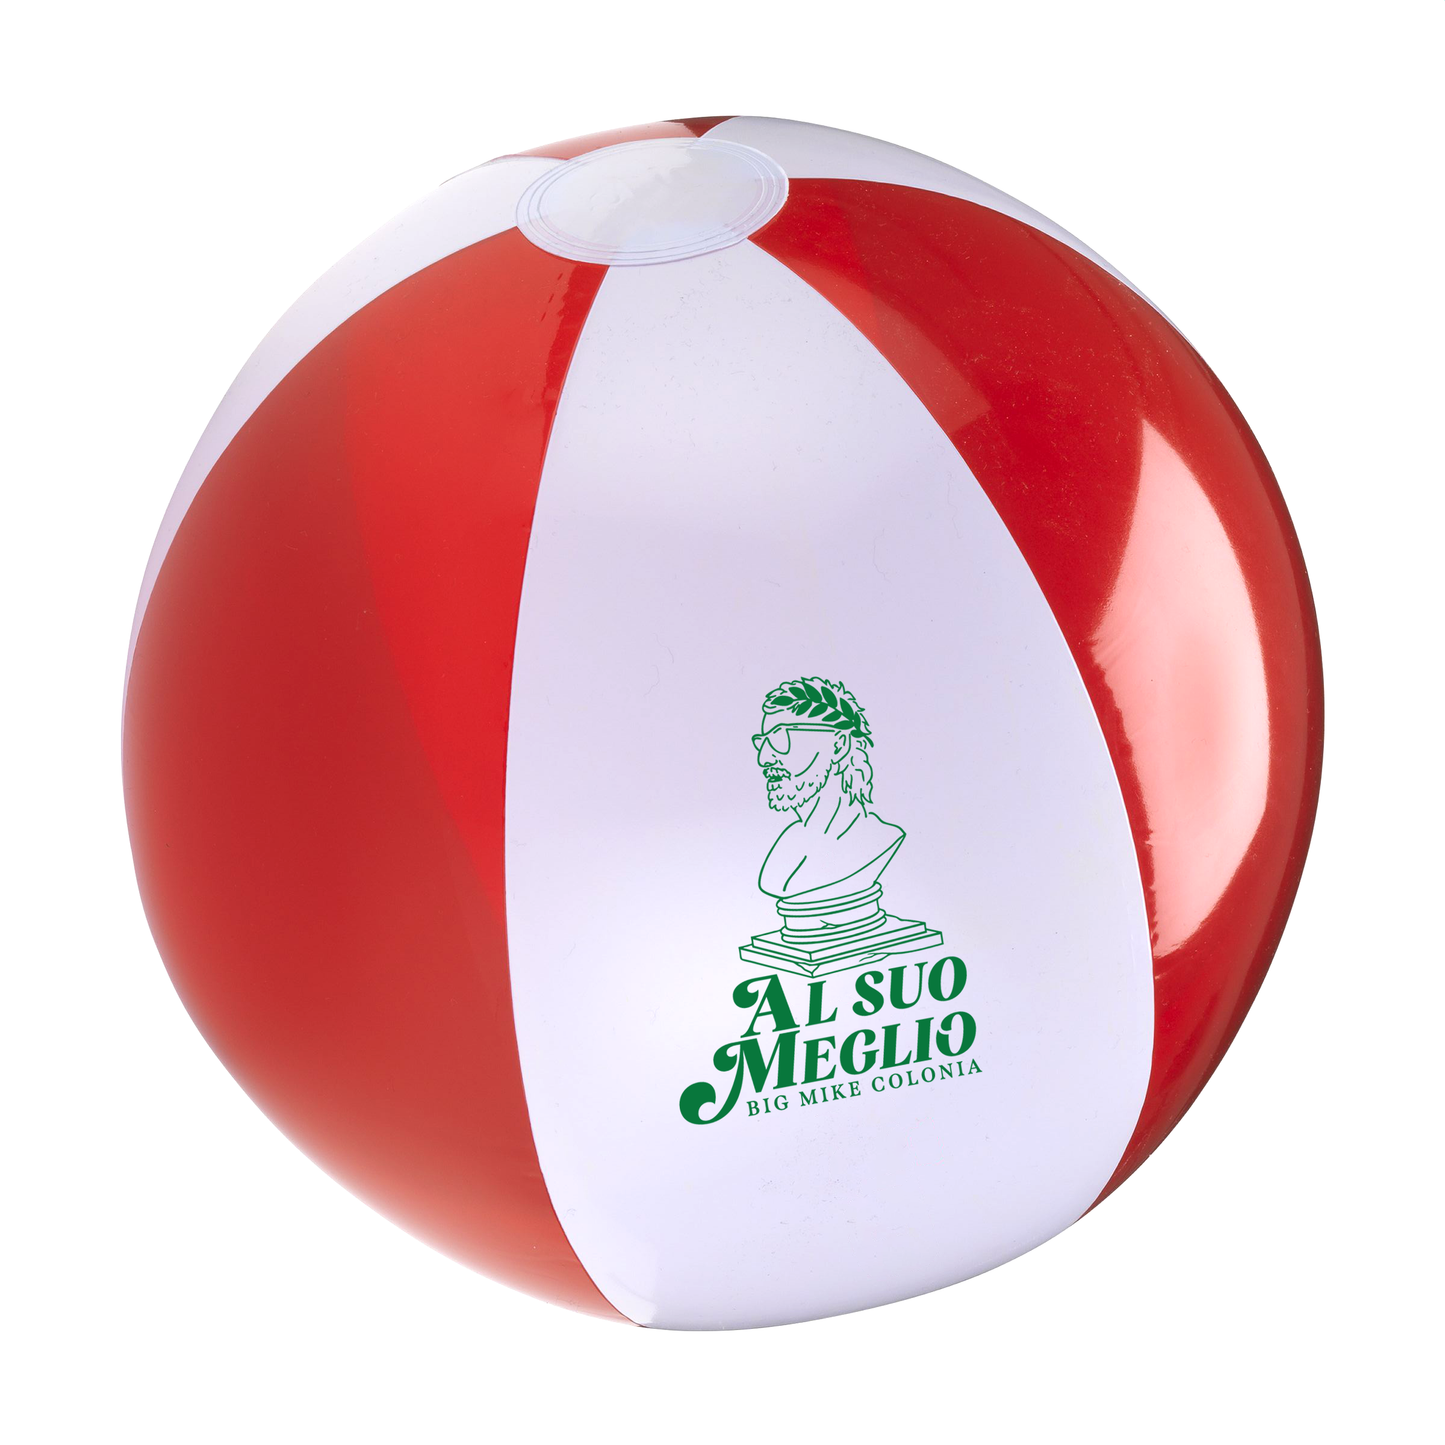 Big Mike Colonia - Al Suo Meglio Beach Ball